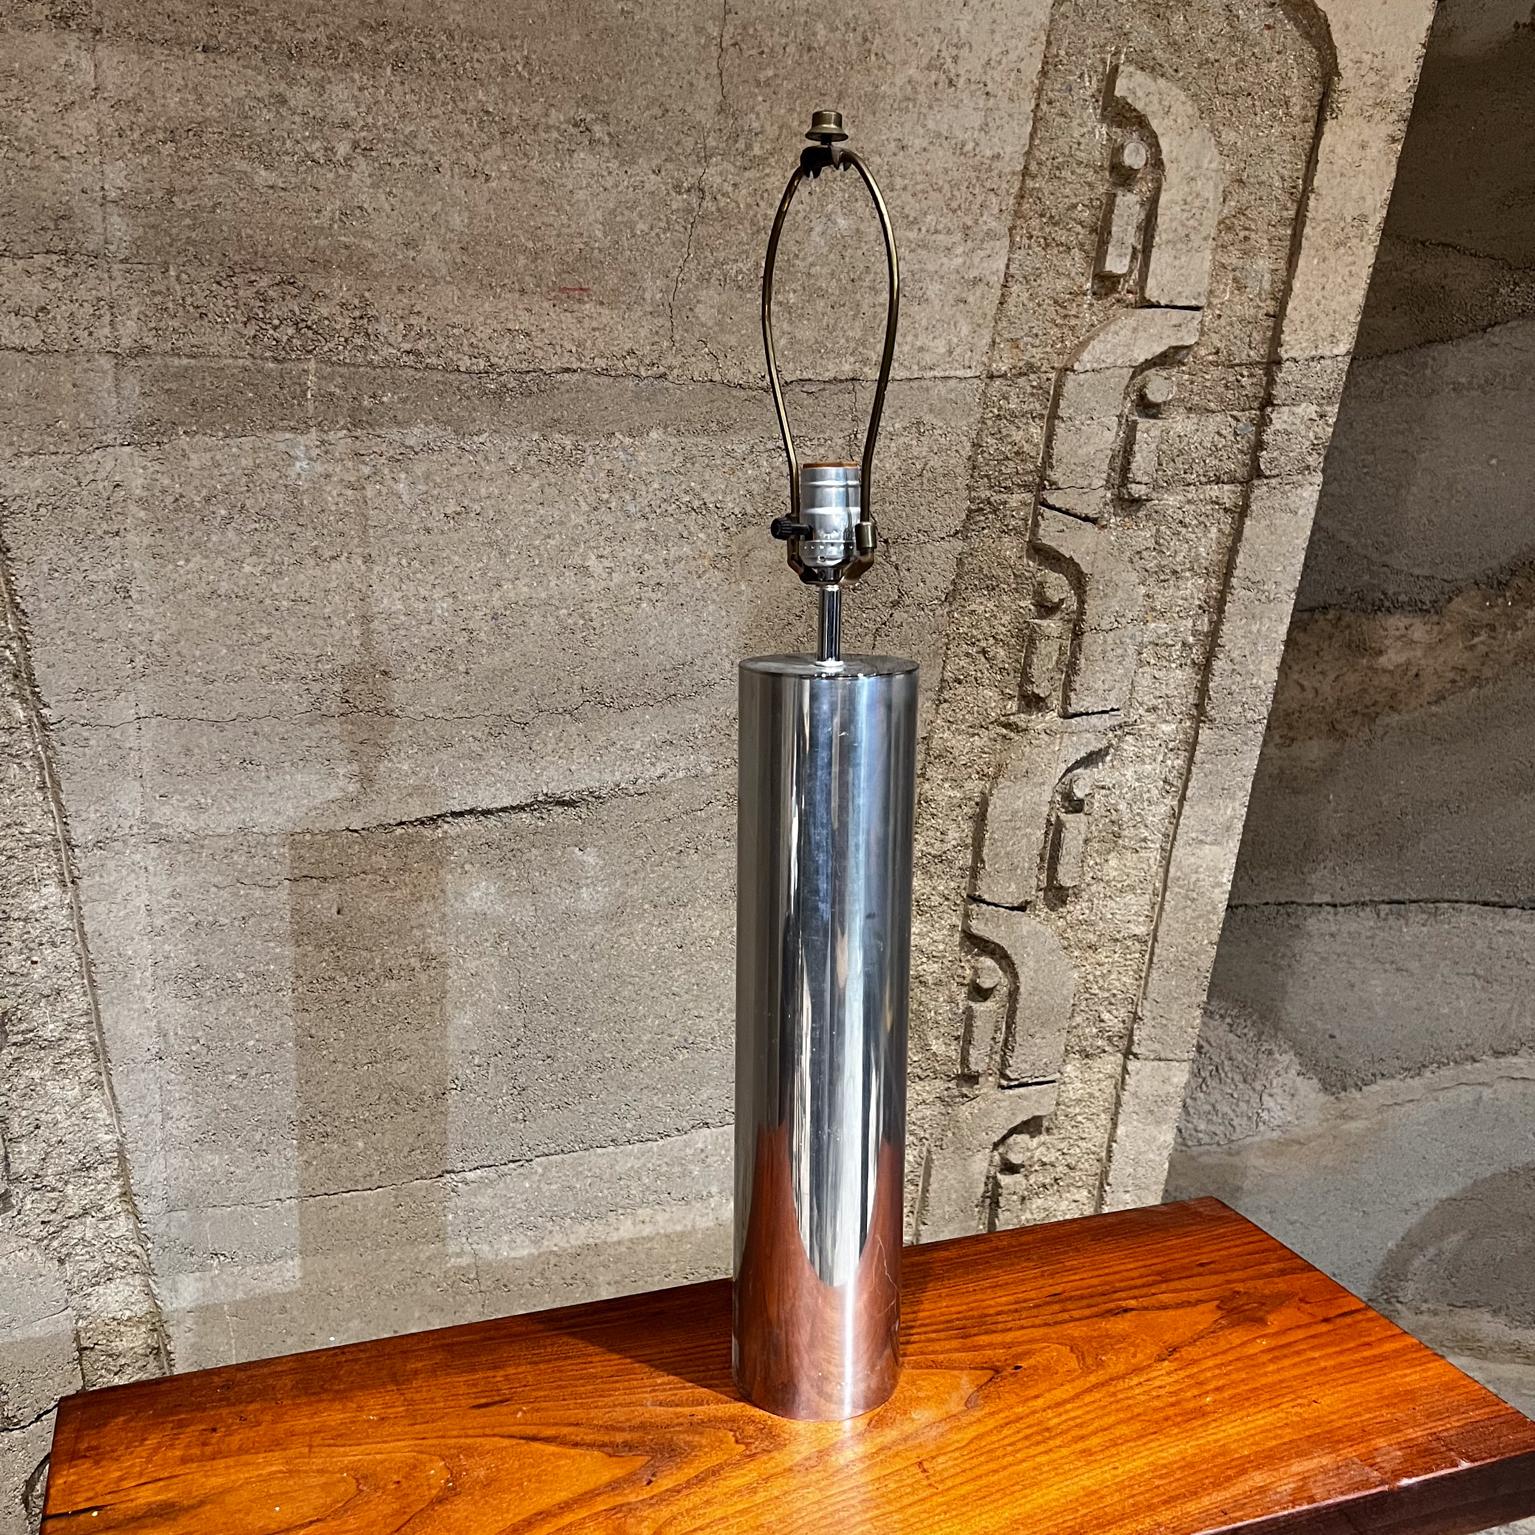 AMBIANIC présente
Lampe de table à cylindre chromé moderniste des années 1970
attribution Robert Sonneman style de conception.
Non signé
21,25 h x 4 diamètre
Original, non restauré, d'occasion Présentation.
L'abat-jour n'est pas inclus
Usure